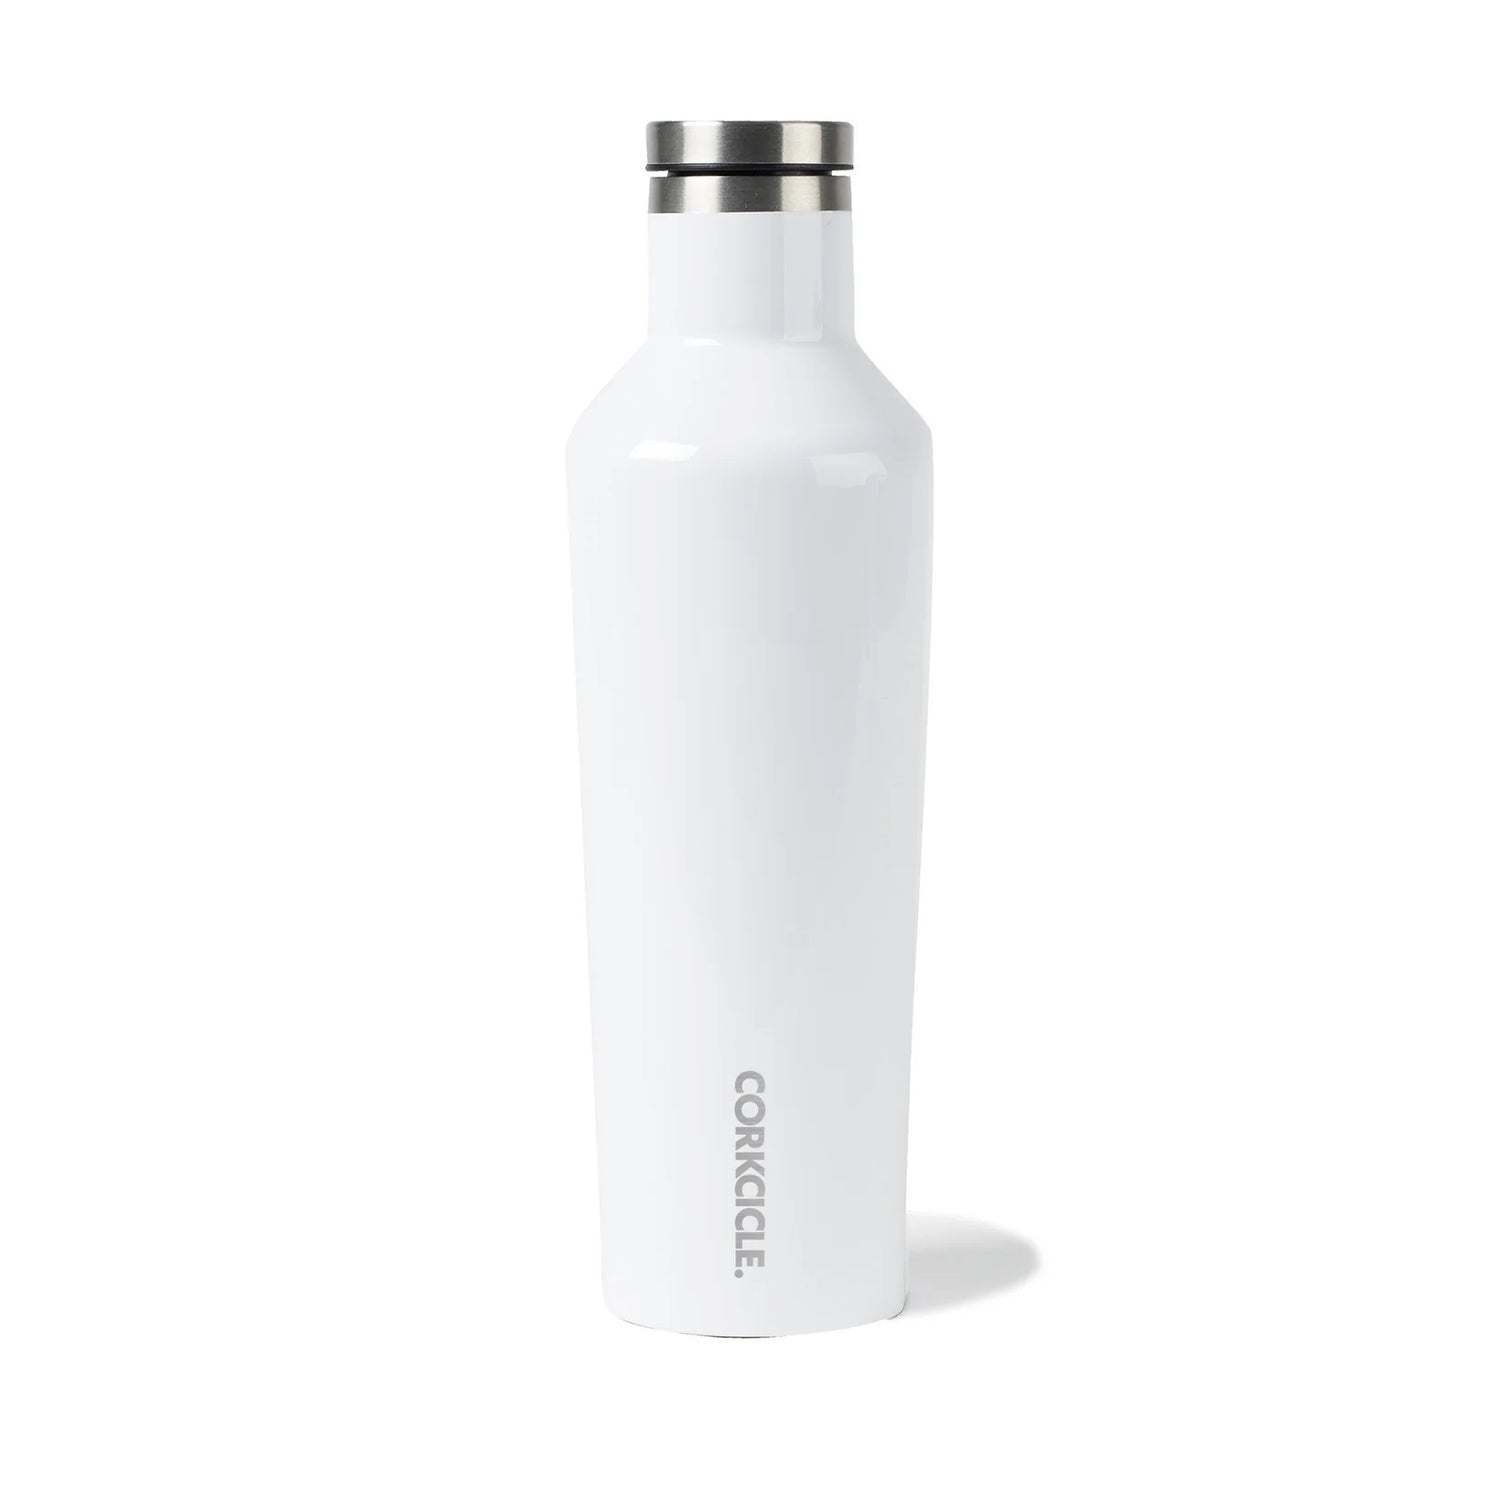 https://sarahwragge.com/cdn/shop/files/SWW-Final-Water-Bottle-White-Back-v2.jpg?v=1694793453&width=1500